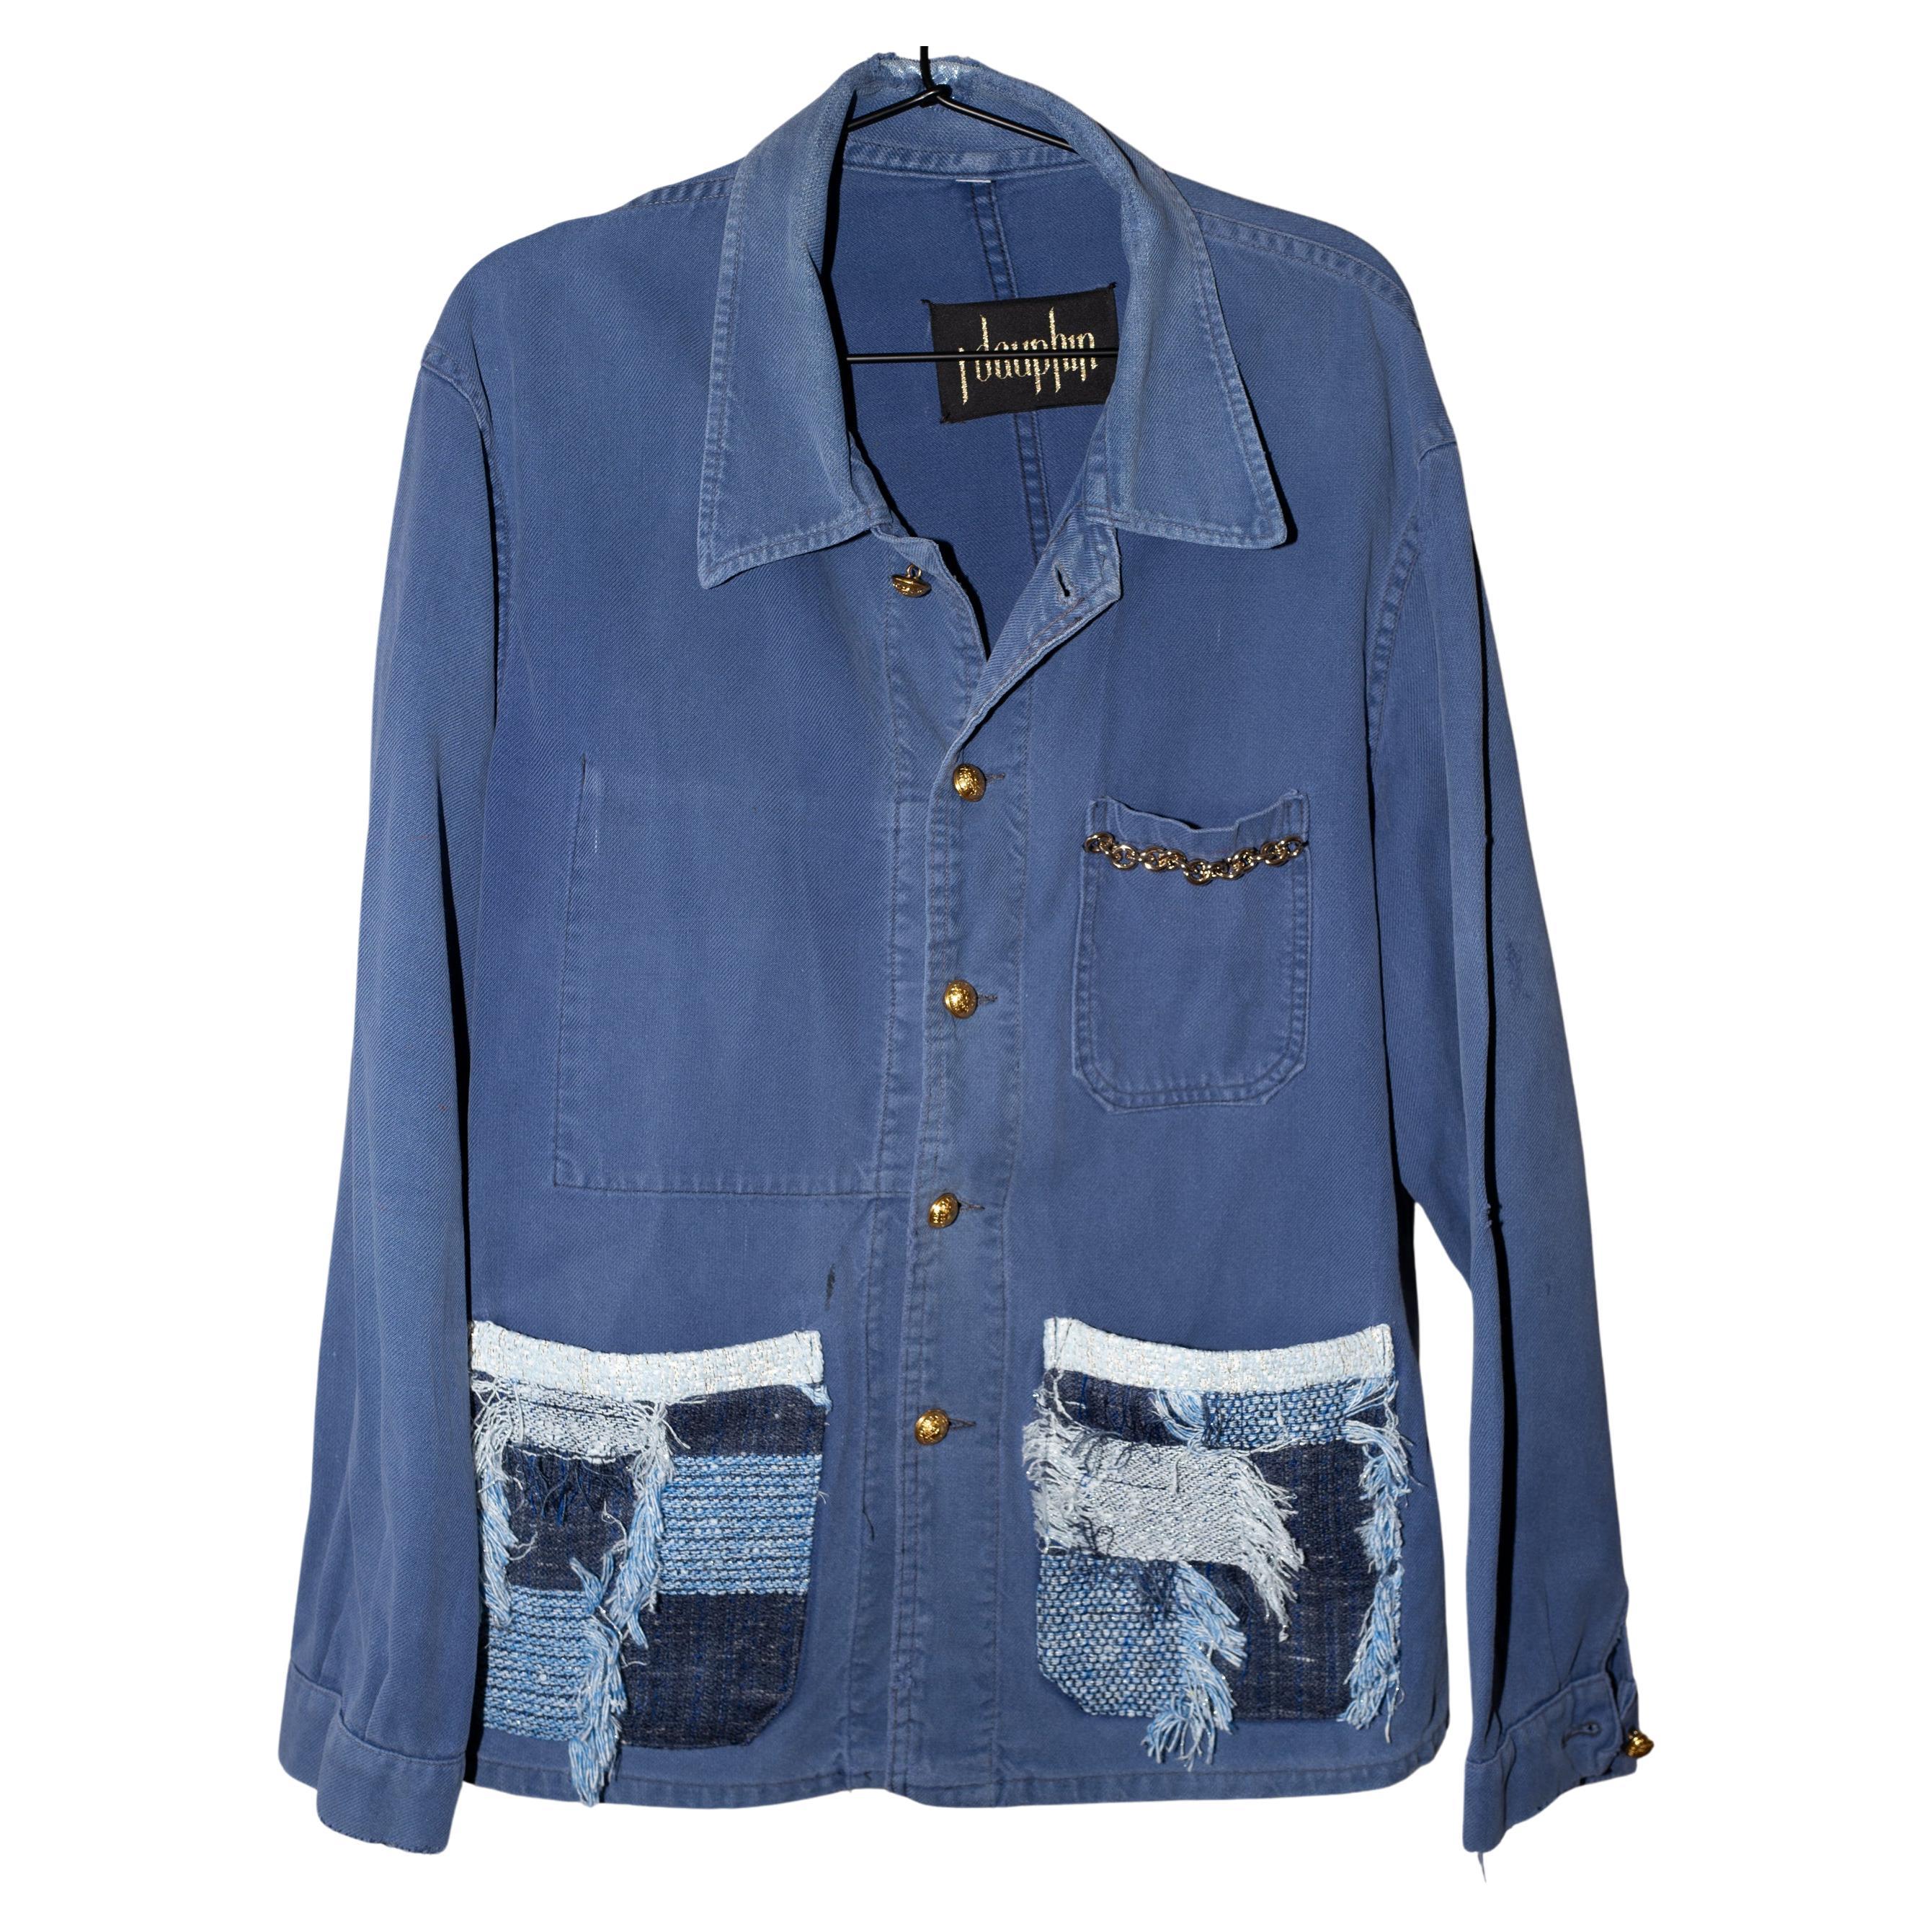 Jacke mit Fransen und Patchwork-Kette verschönert in Blau Distressed  Arbeitskleidung Baumwolle